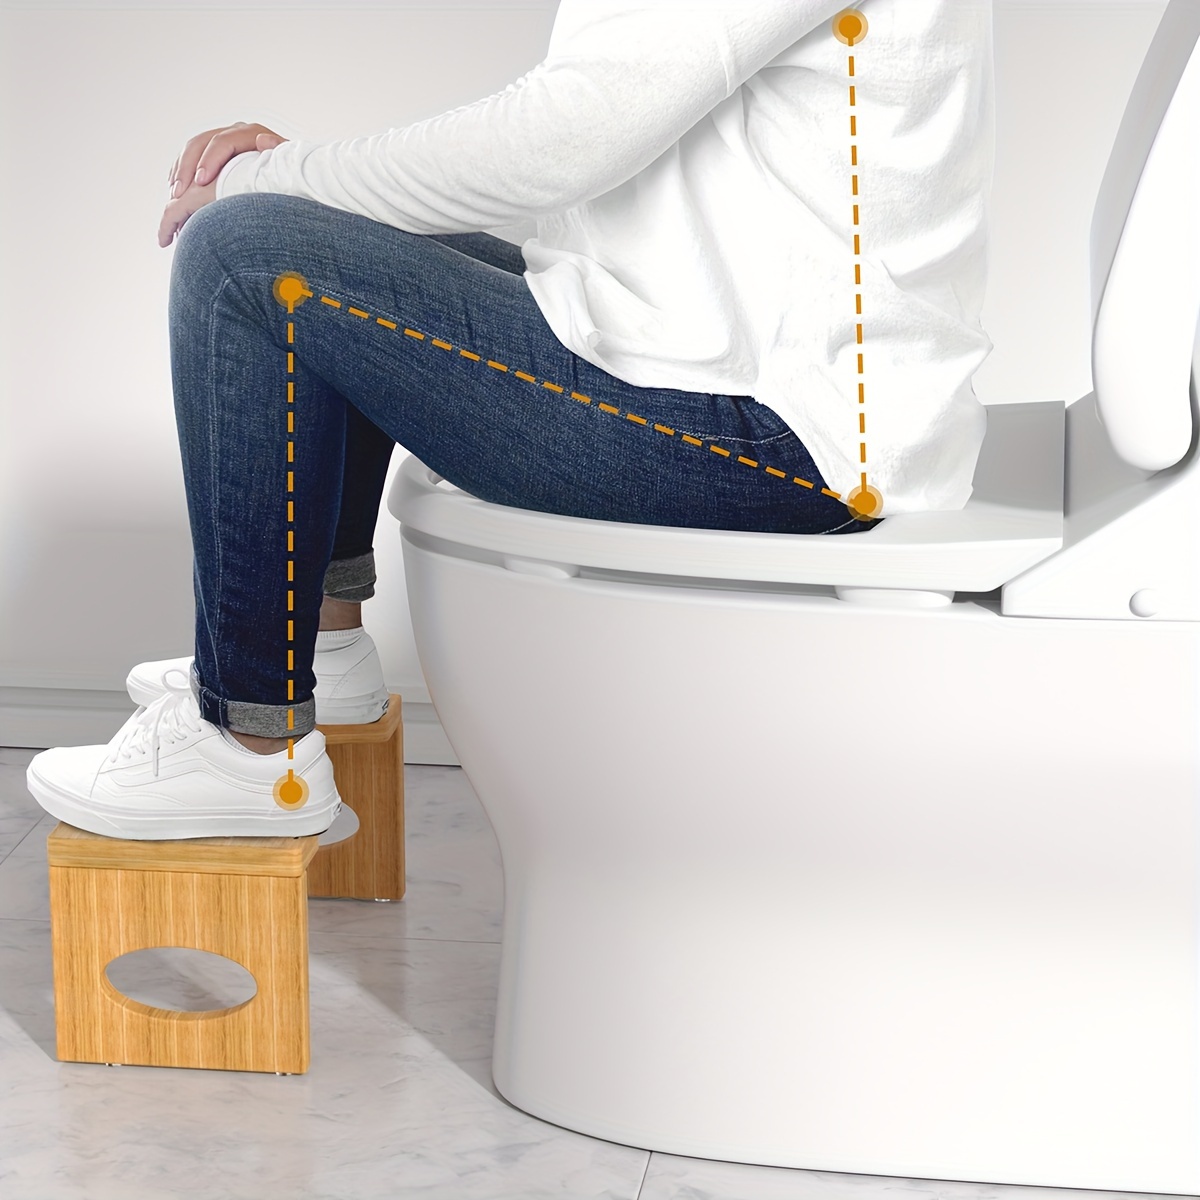 Tabouret de toilette pliable, 7 pouces de posture accroupie saine Tabouret  de caca avec pieds antidérapants par Cheago, tabouret de pied de voyage